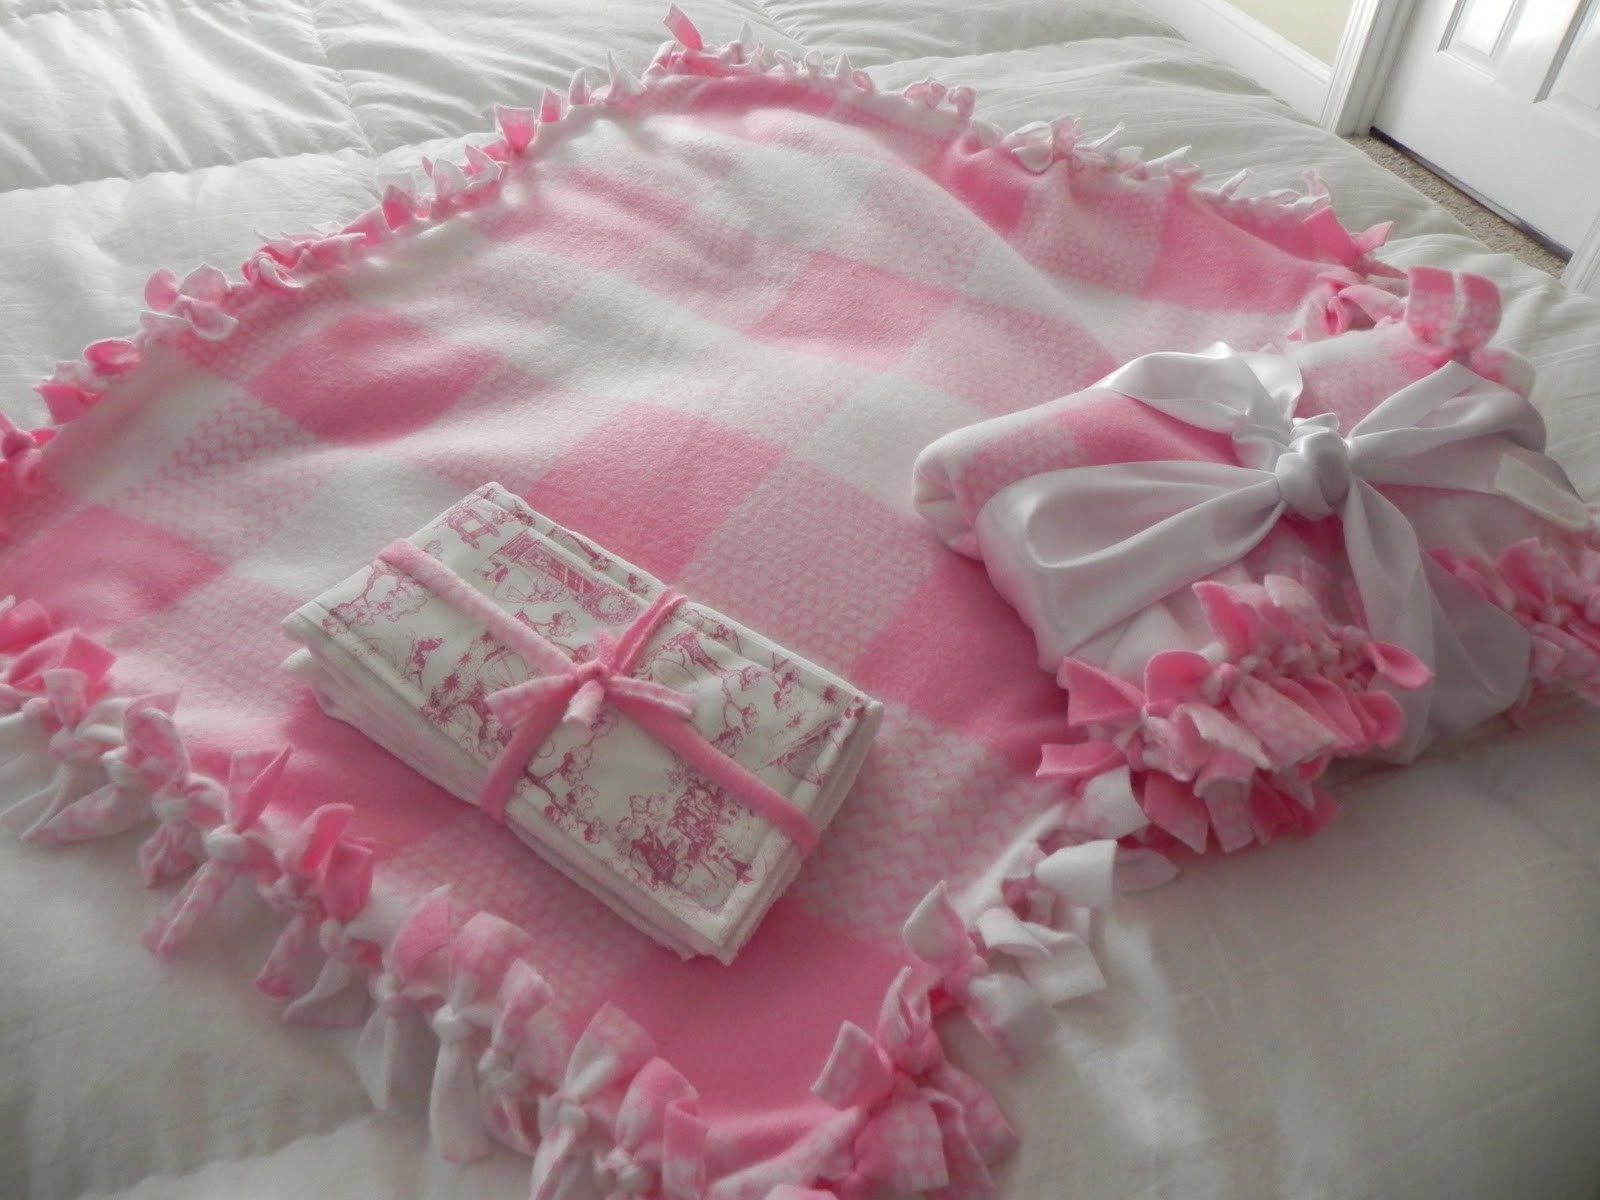 DIY Fleece Baby Blanket
 No Sew Fleece Baby Blanket